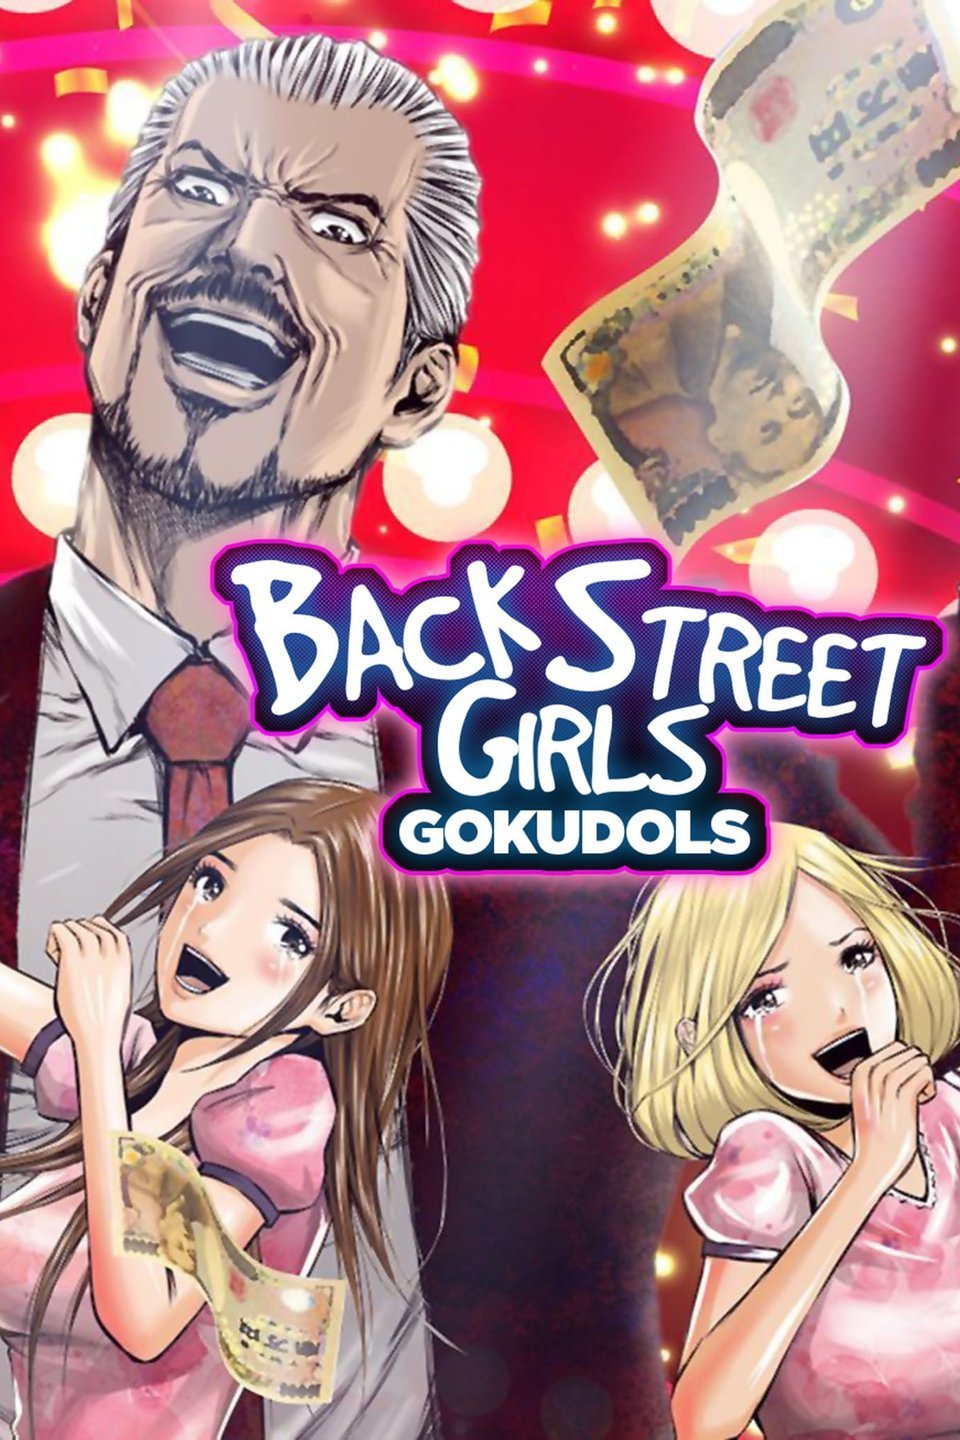 Back Street Girls Gokudols Netflix Wiki Fandom